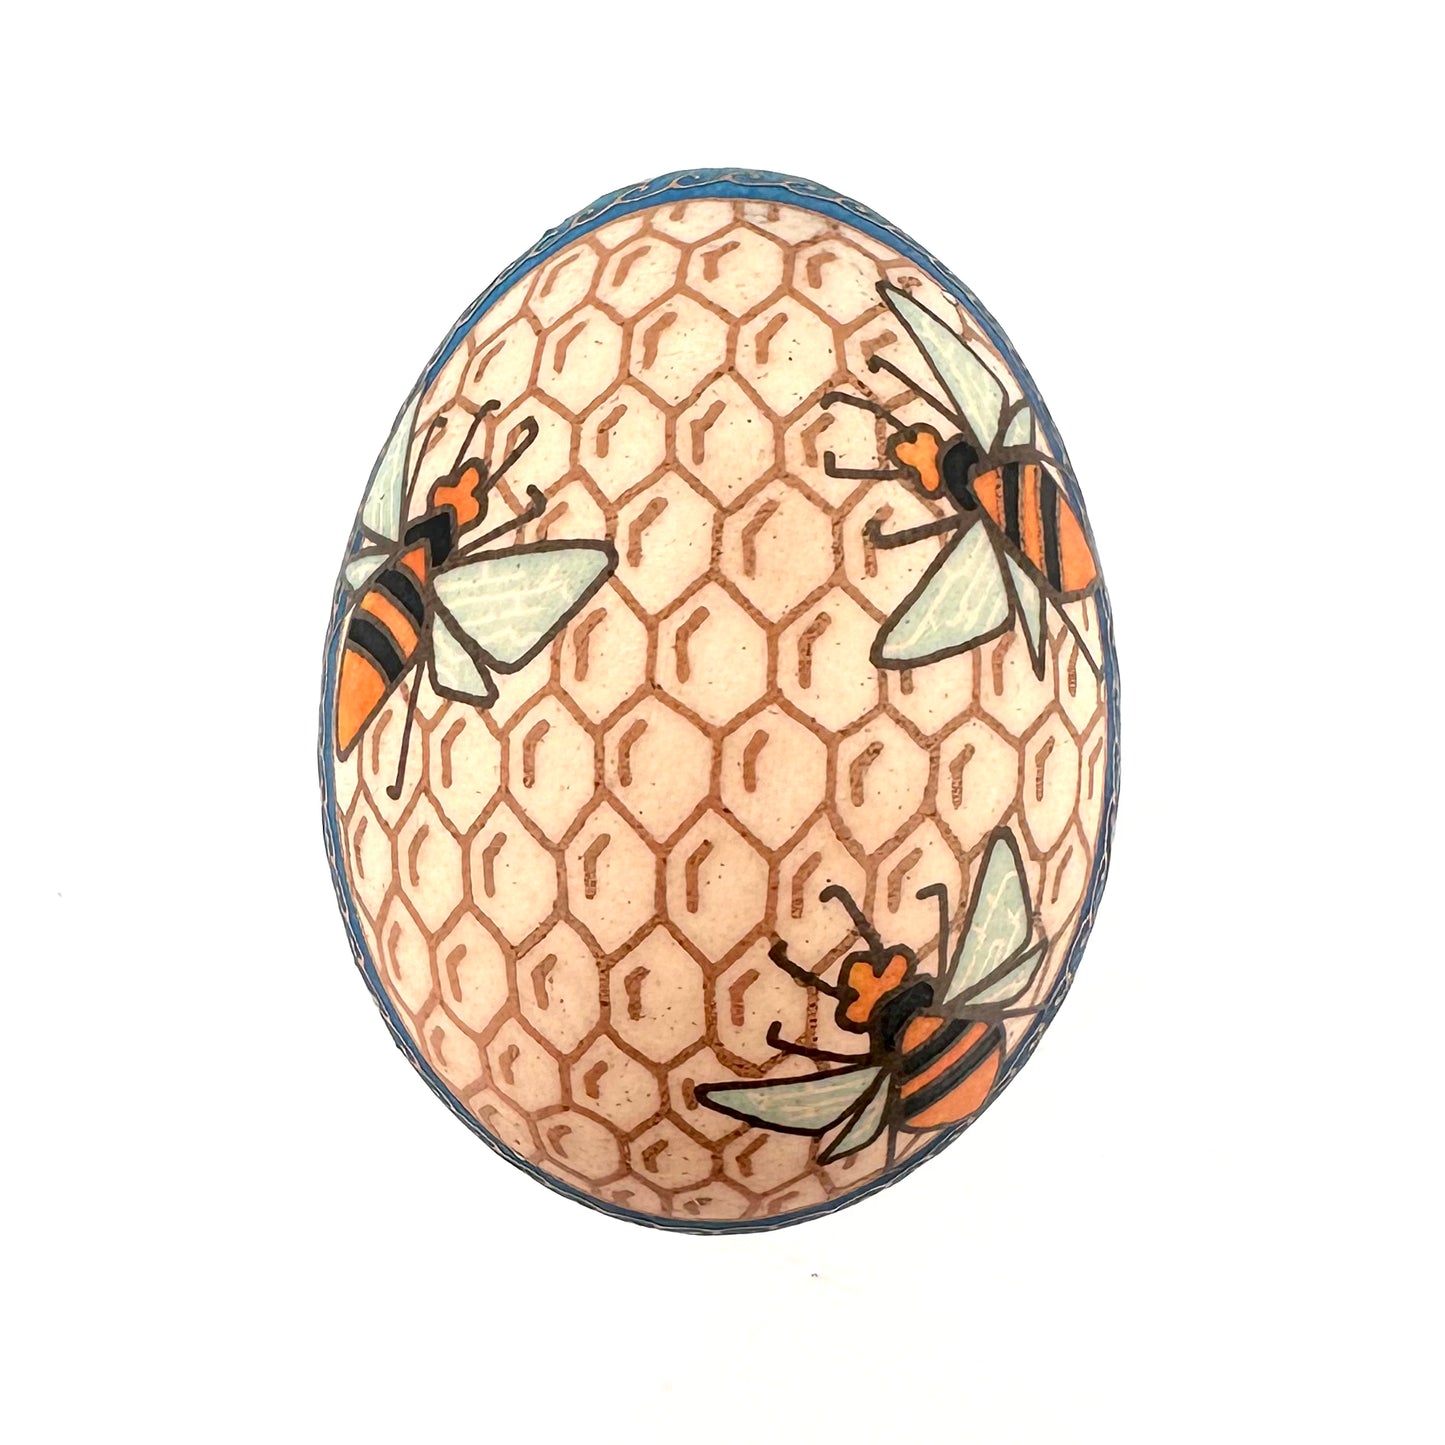 Display Pysanka Egg